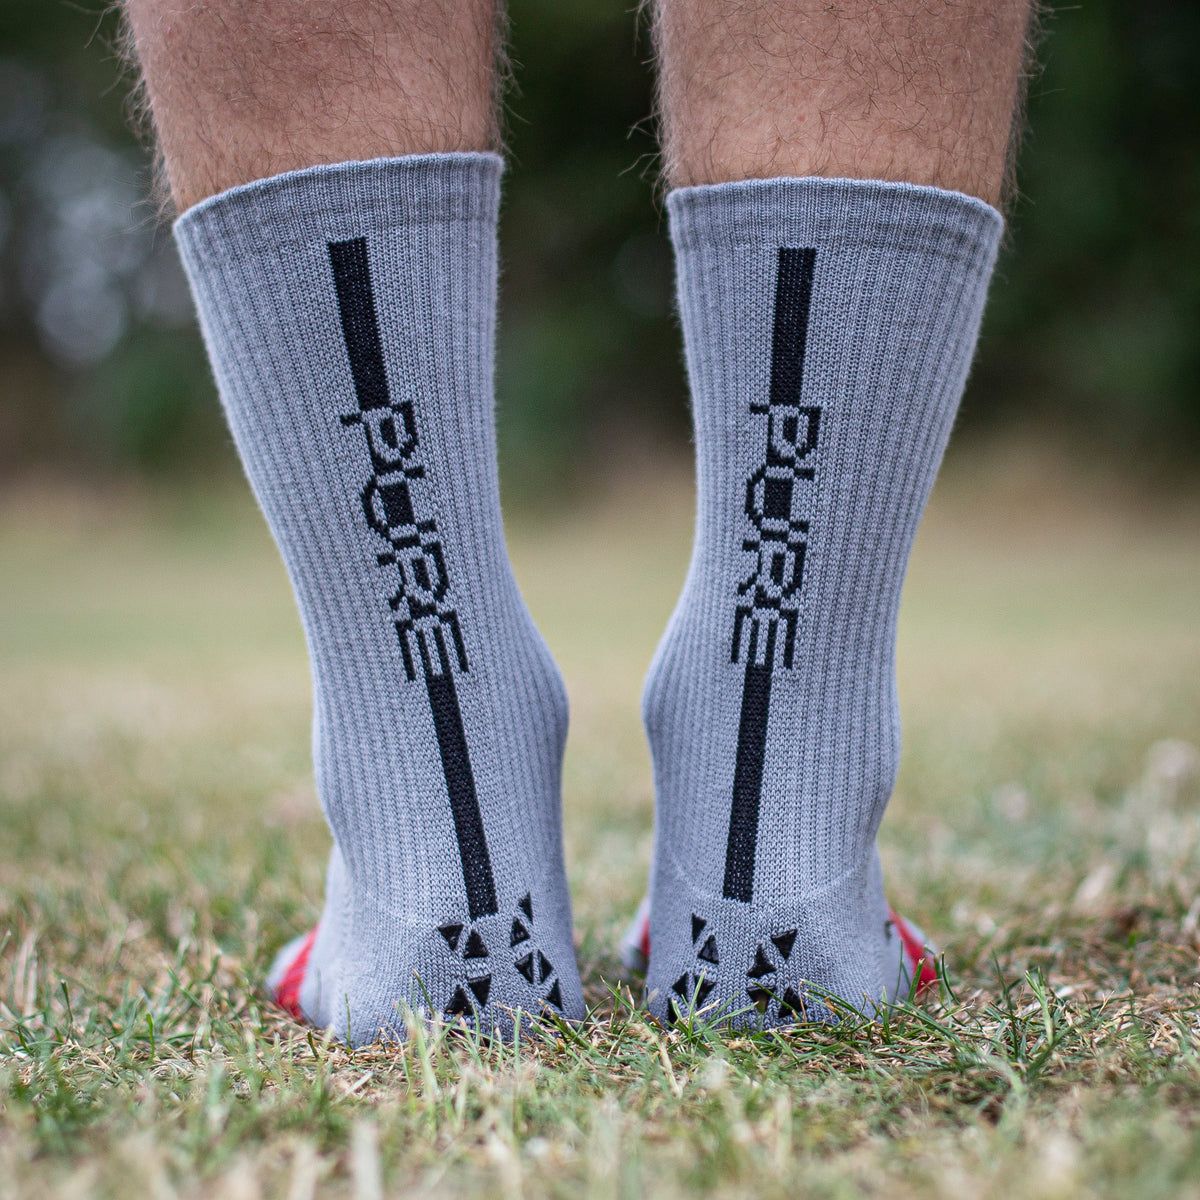 The BEST Grip Socks? NEW Pure Grip Socks Pro Review (SR4U) 